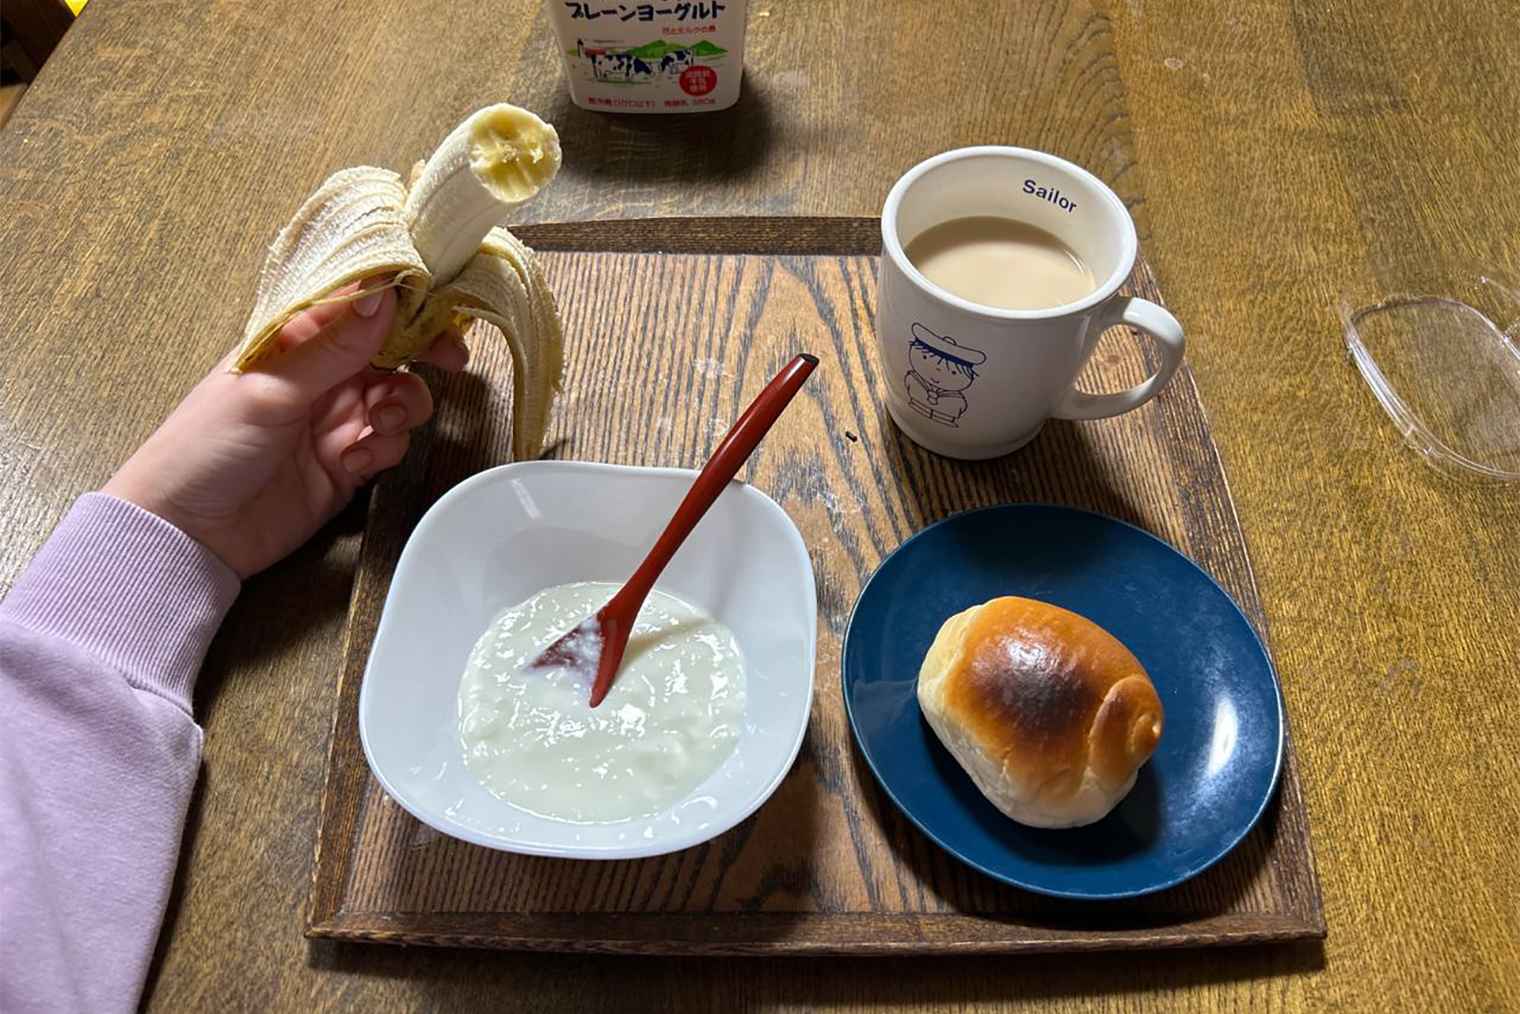 Завтрак в семье: йогурт без добавок, булочка, банан и кофе